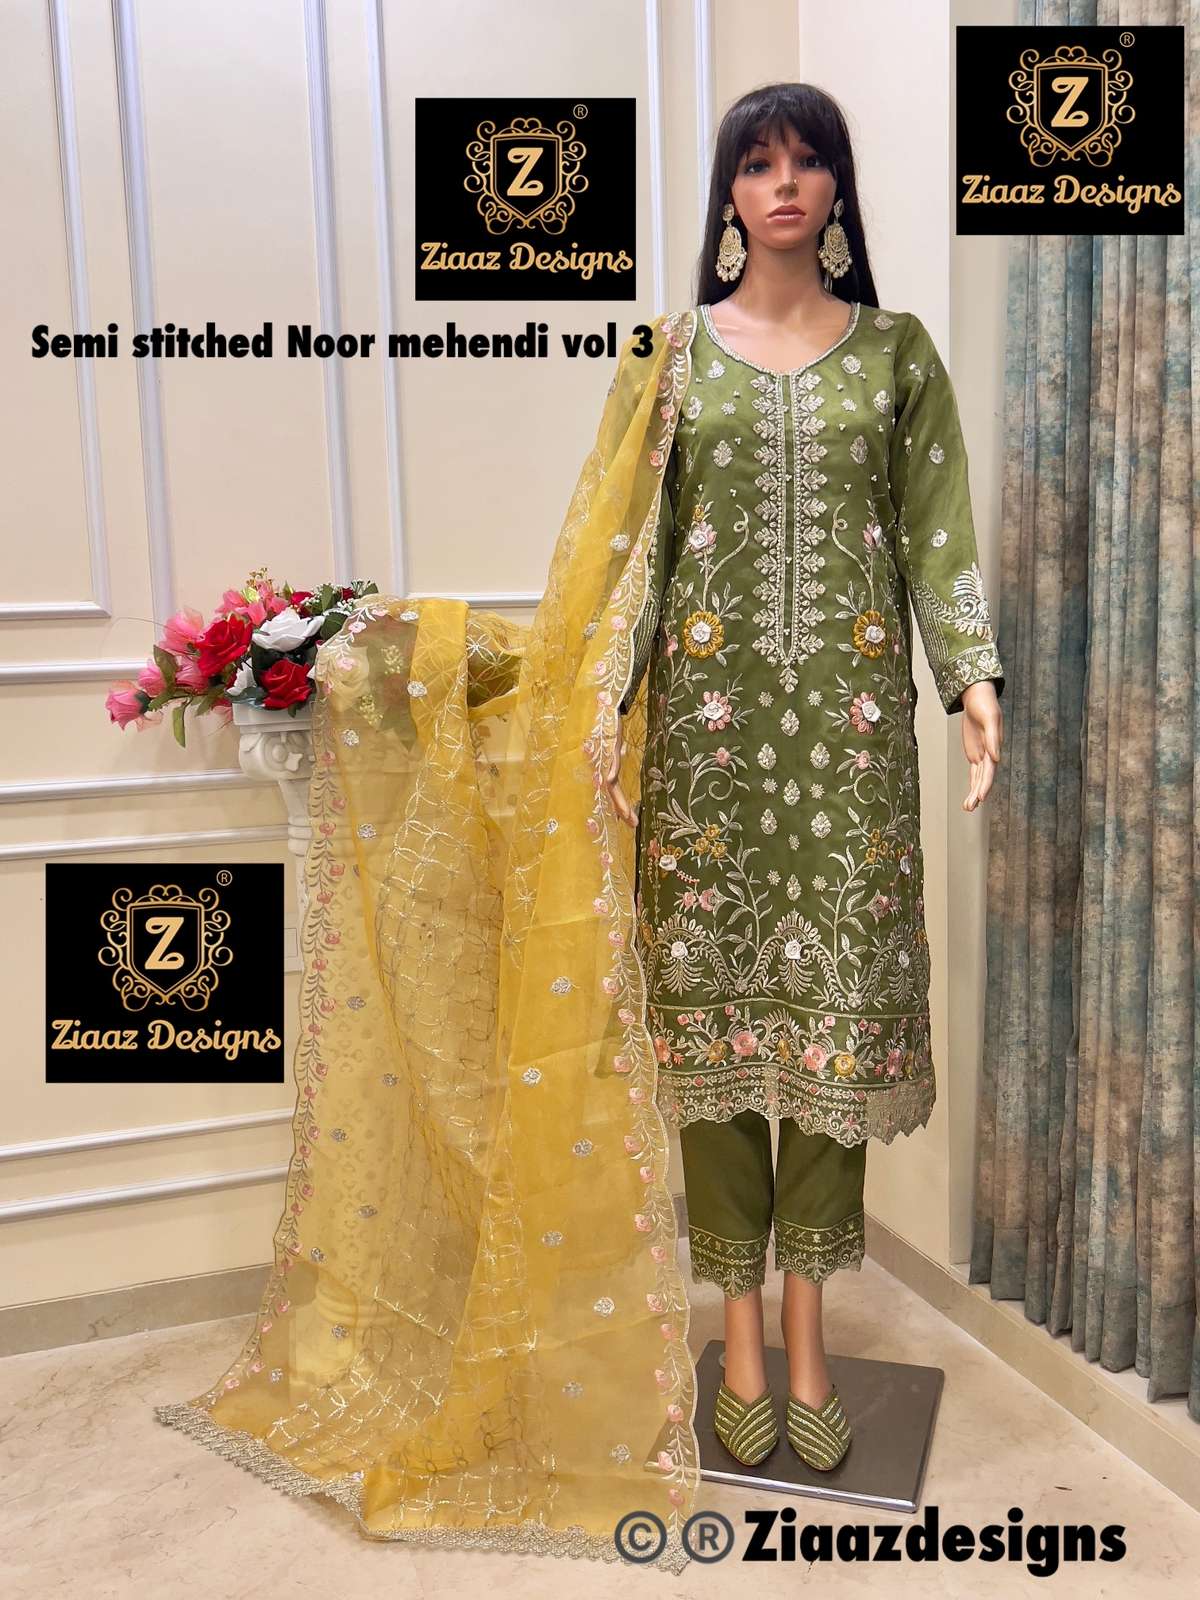 Ziaaz Designs Noor mehendi vol 3 Organza embroidered suit